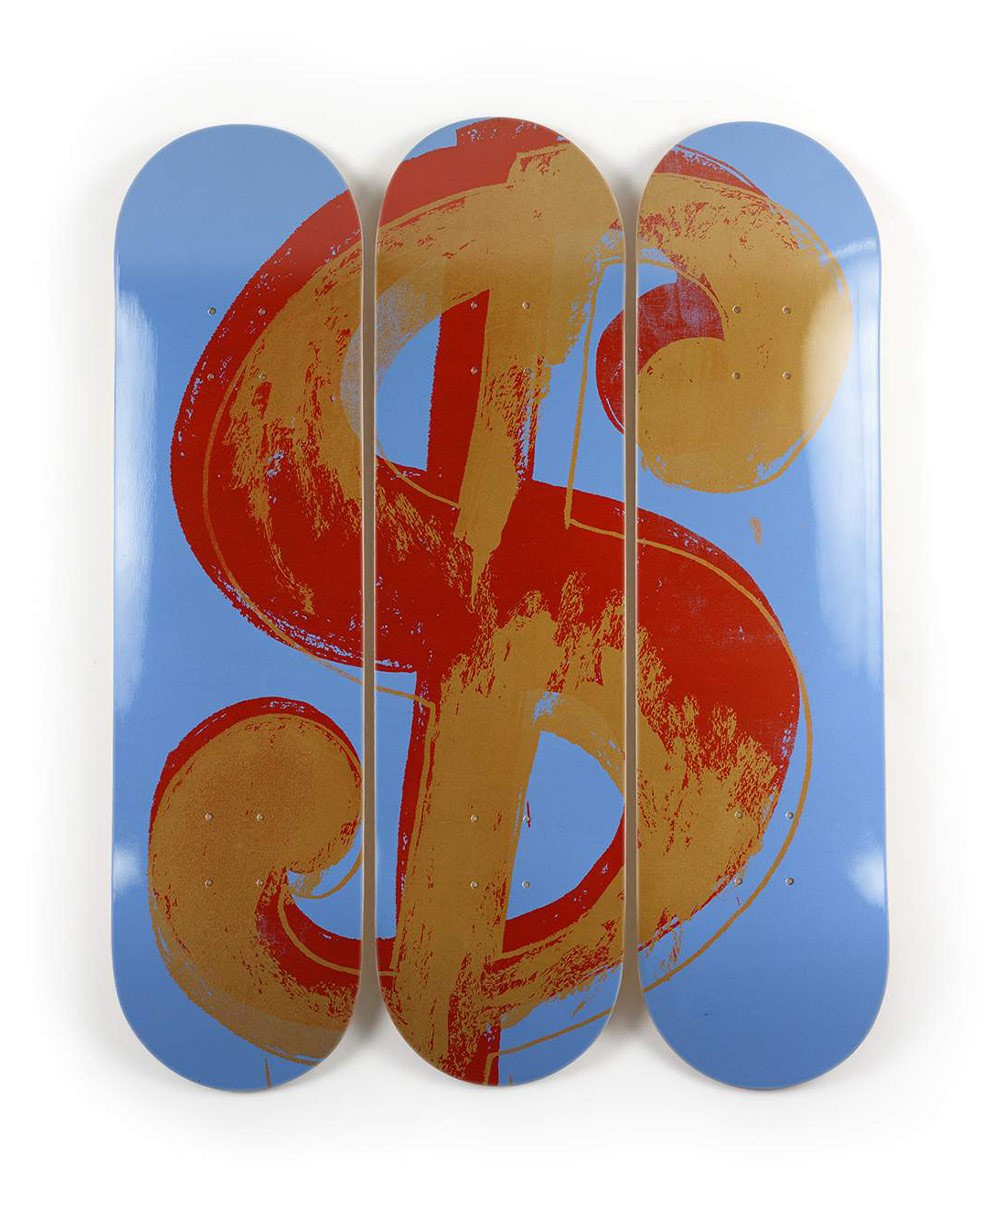 Produktbild "Dollar Sign Blue" designed by Andy Warhol von The Skateroom im RAUM Conceptstore